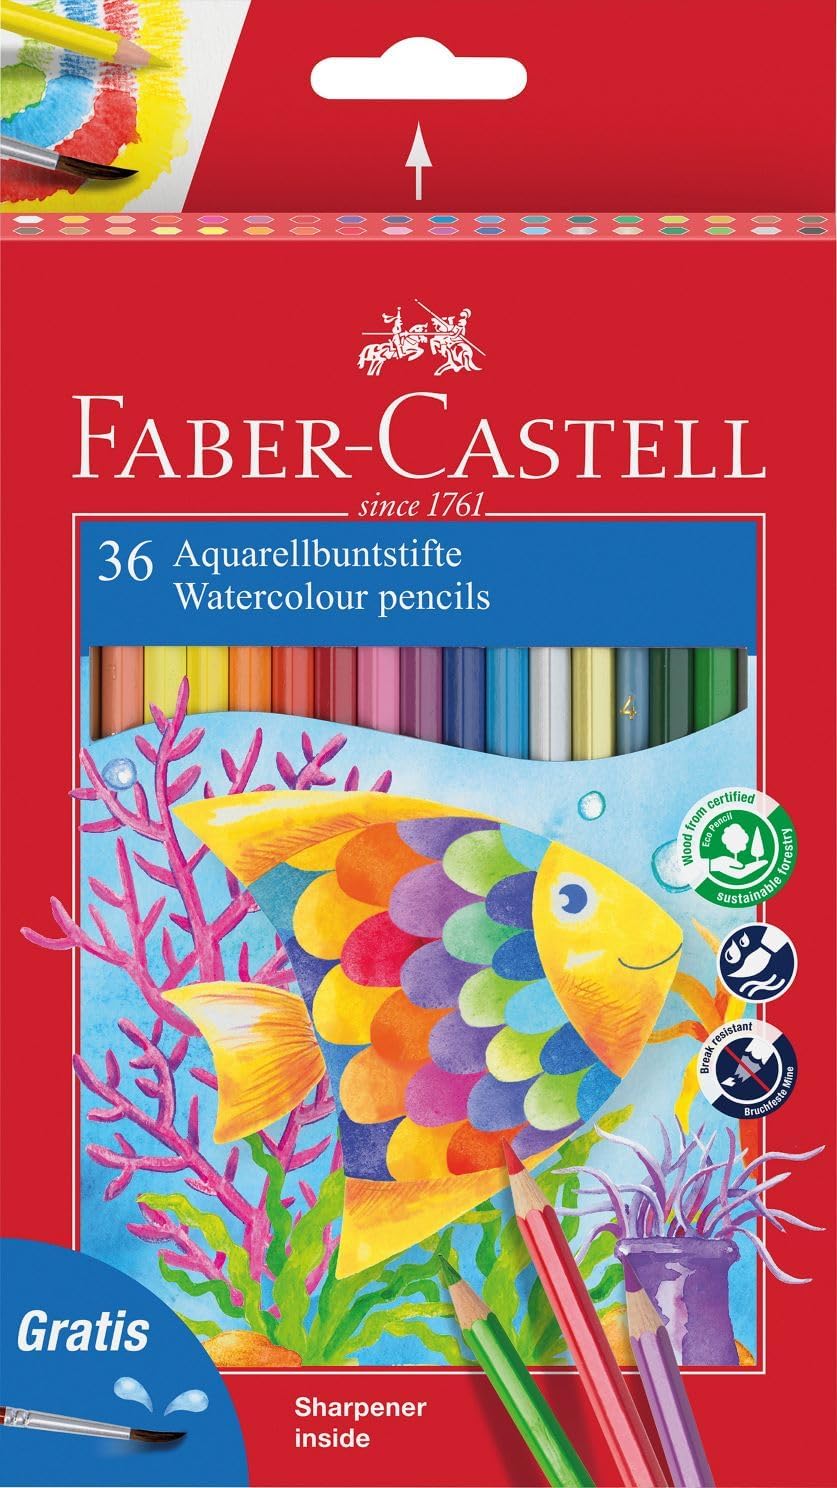 Faber-Castell Classic Color Crayons Aquarelle Paquet de 36 Crayons de Couleur Aquarelle Hexagonaux + Pinceau - Résistance à la Casse - Couleurs Assorties